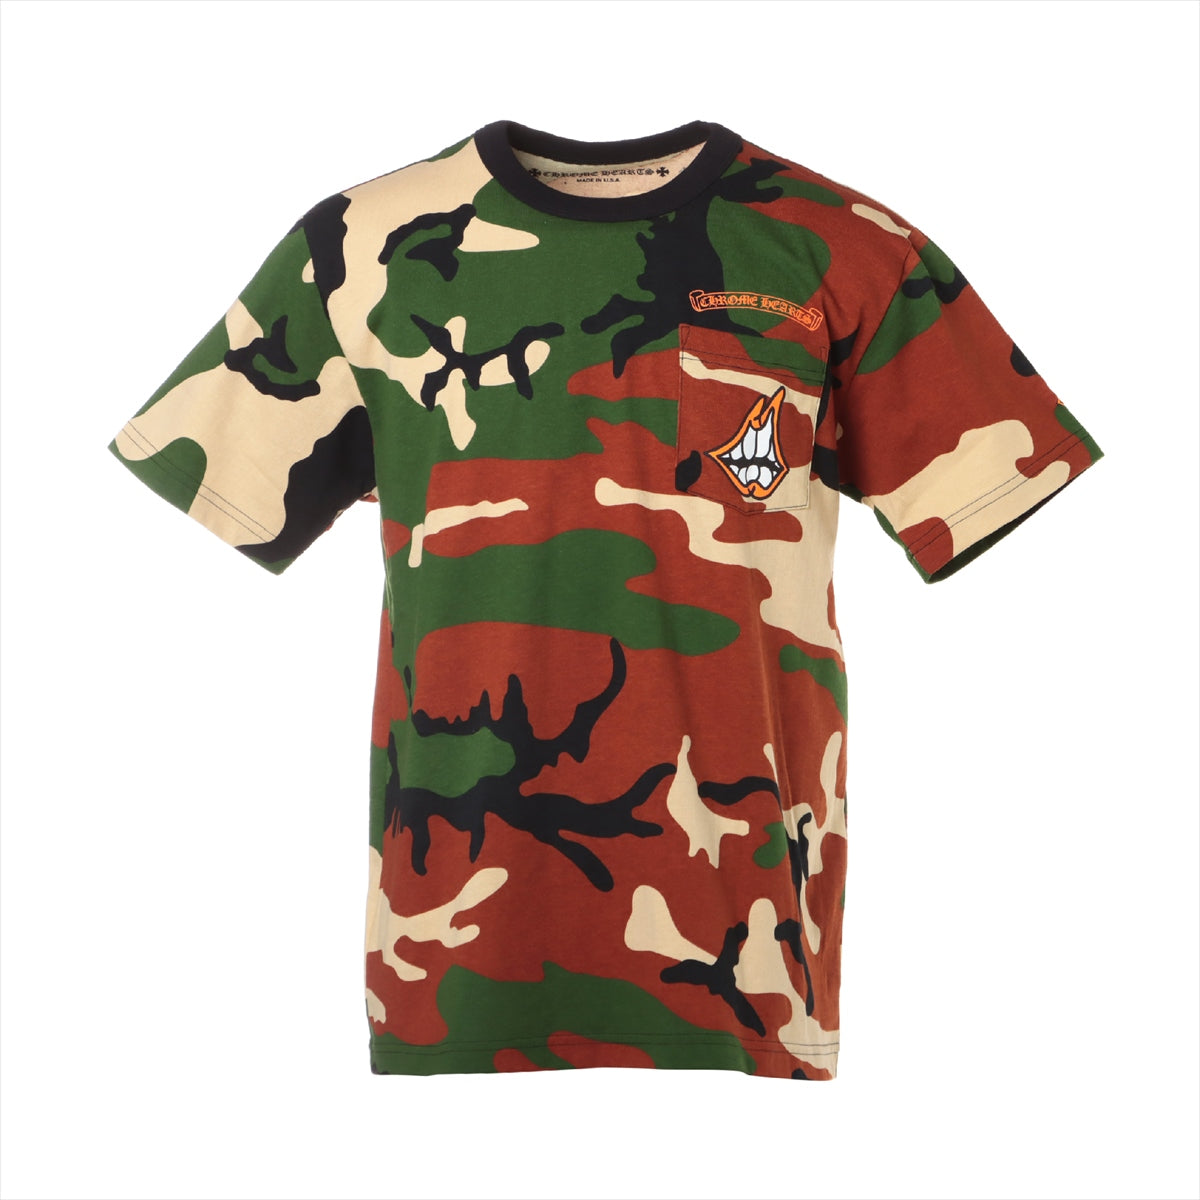 Chrome Hearts Matty Boy T-shirt Cotton size L Camouflage PPO CAUTION